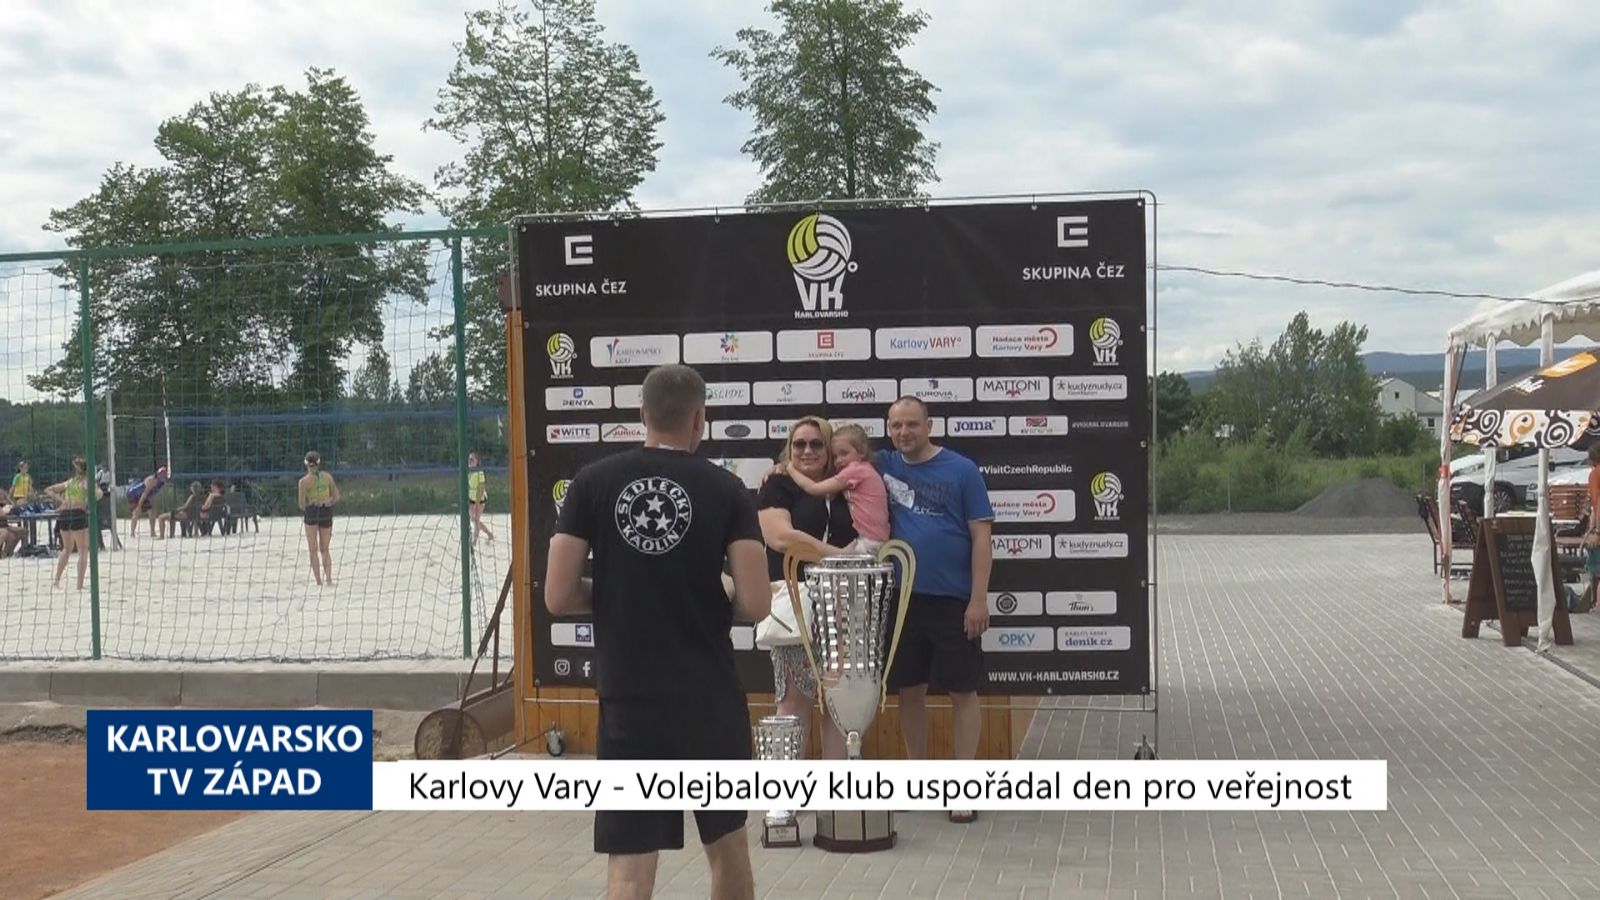 Karlovy Vary: Volejbalový klub uspořádal den pro veřejnost (TV Západ)